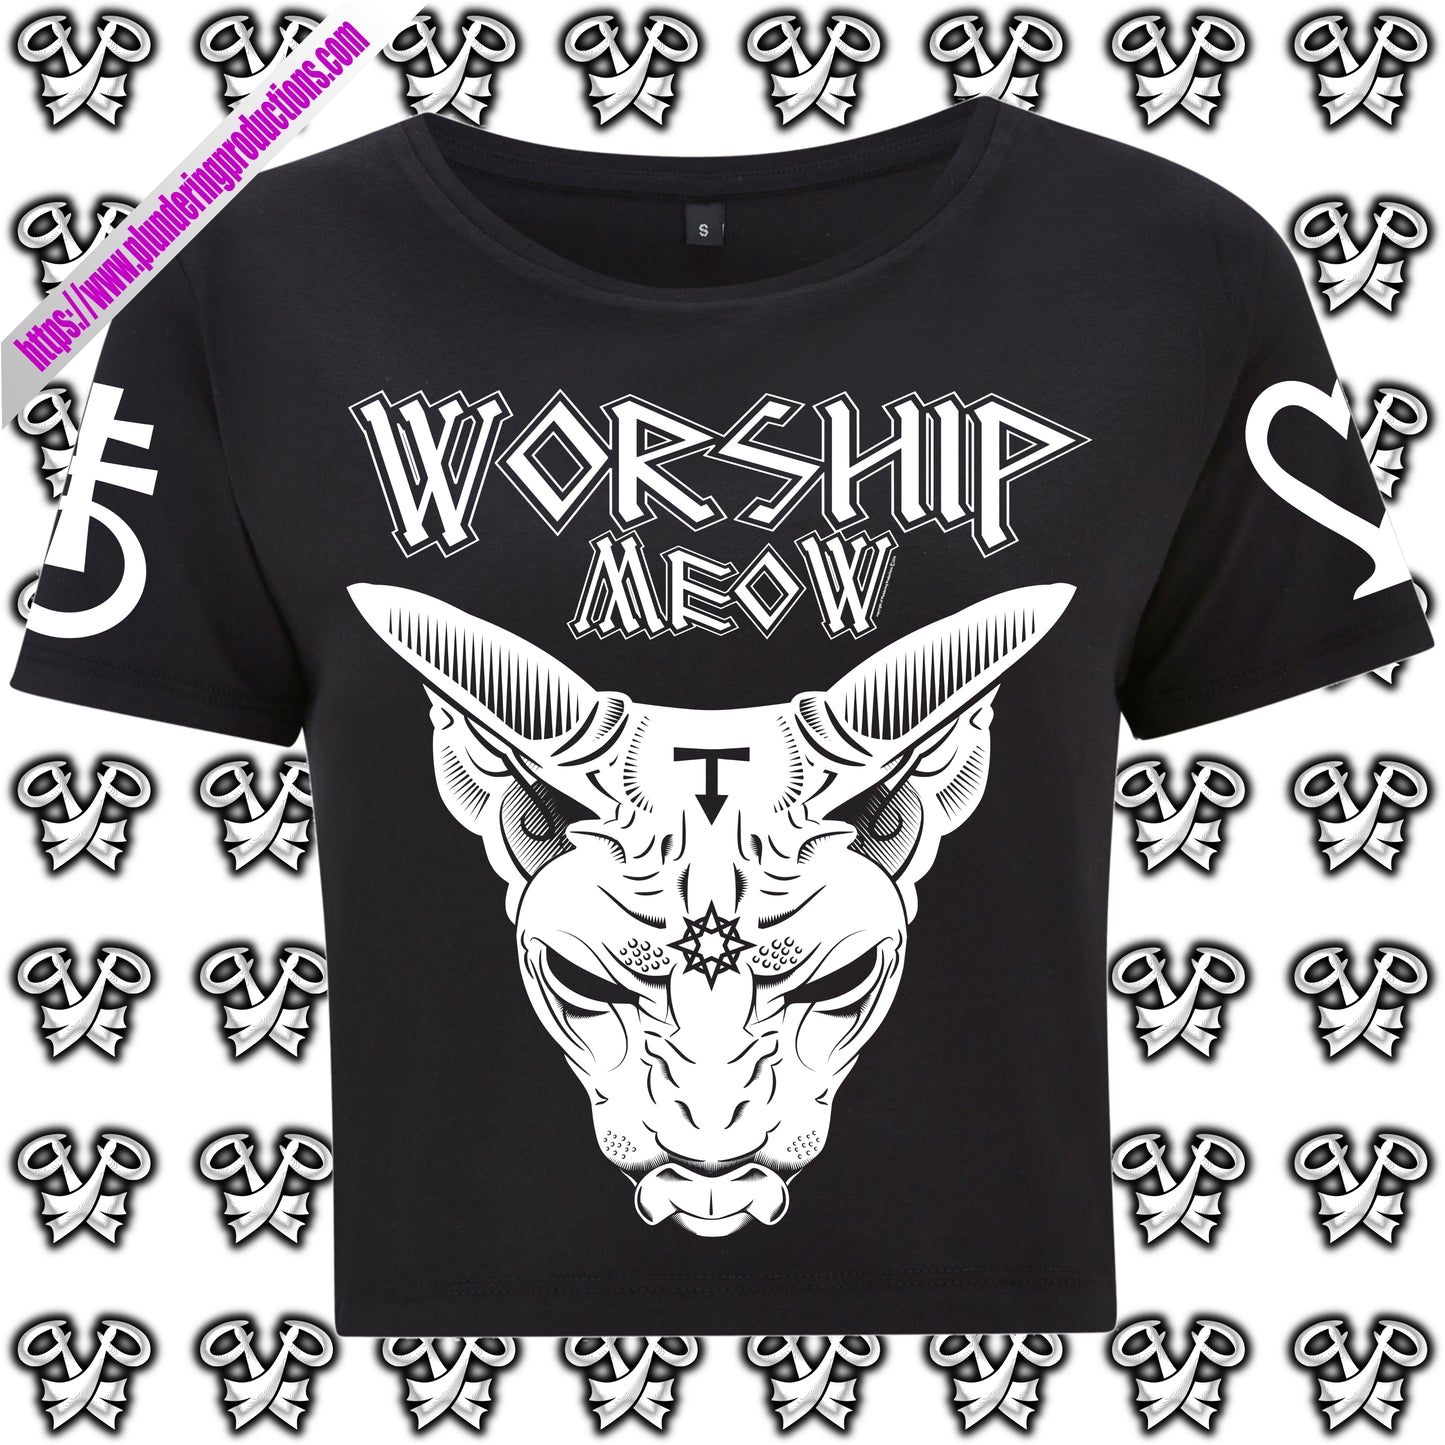 Worship Meow Cropped T-shirt